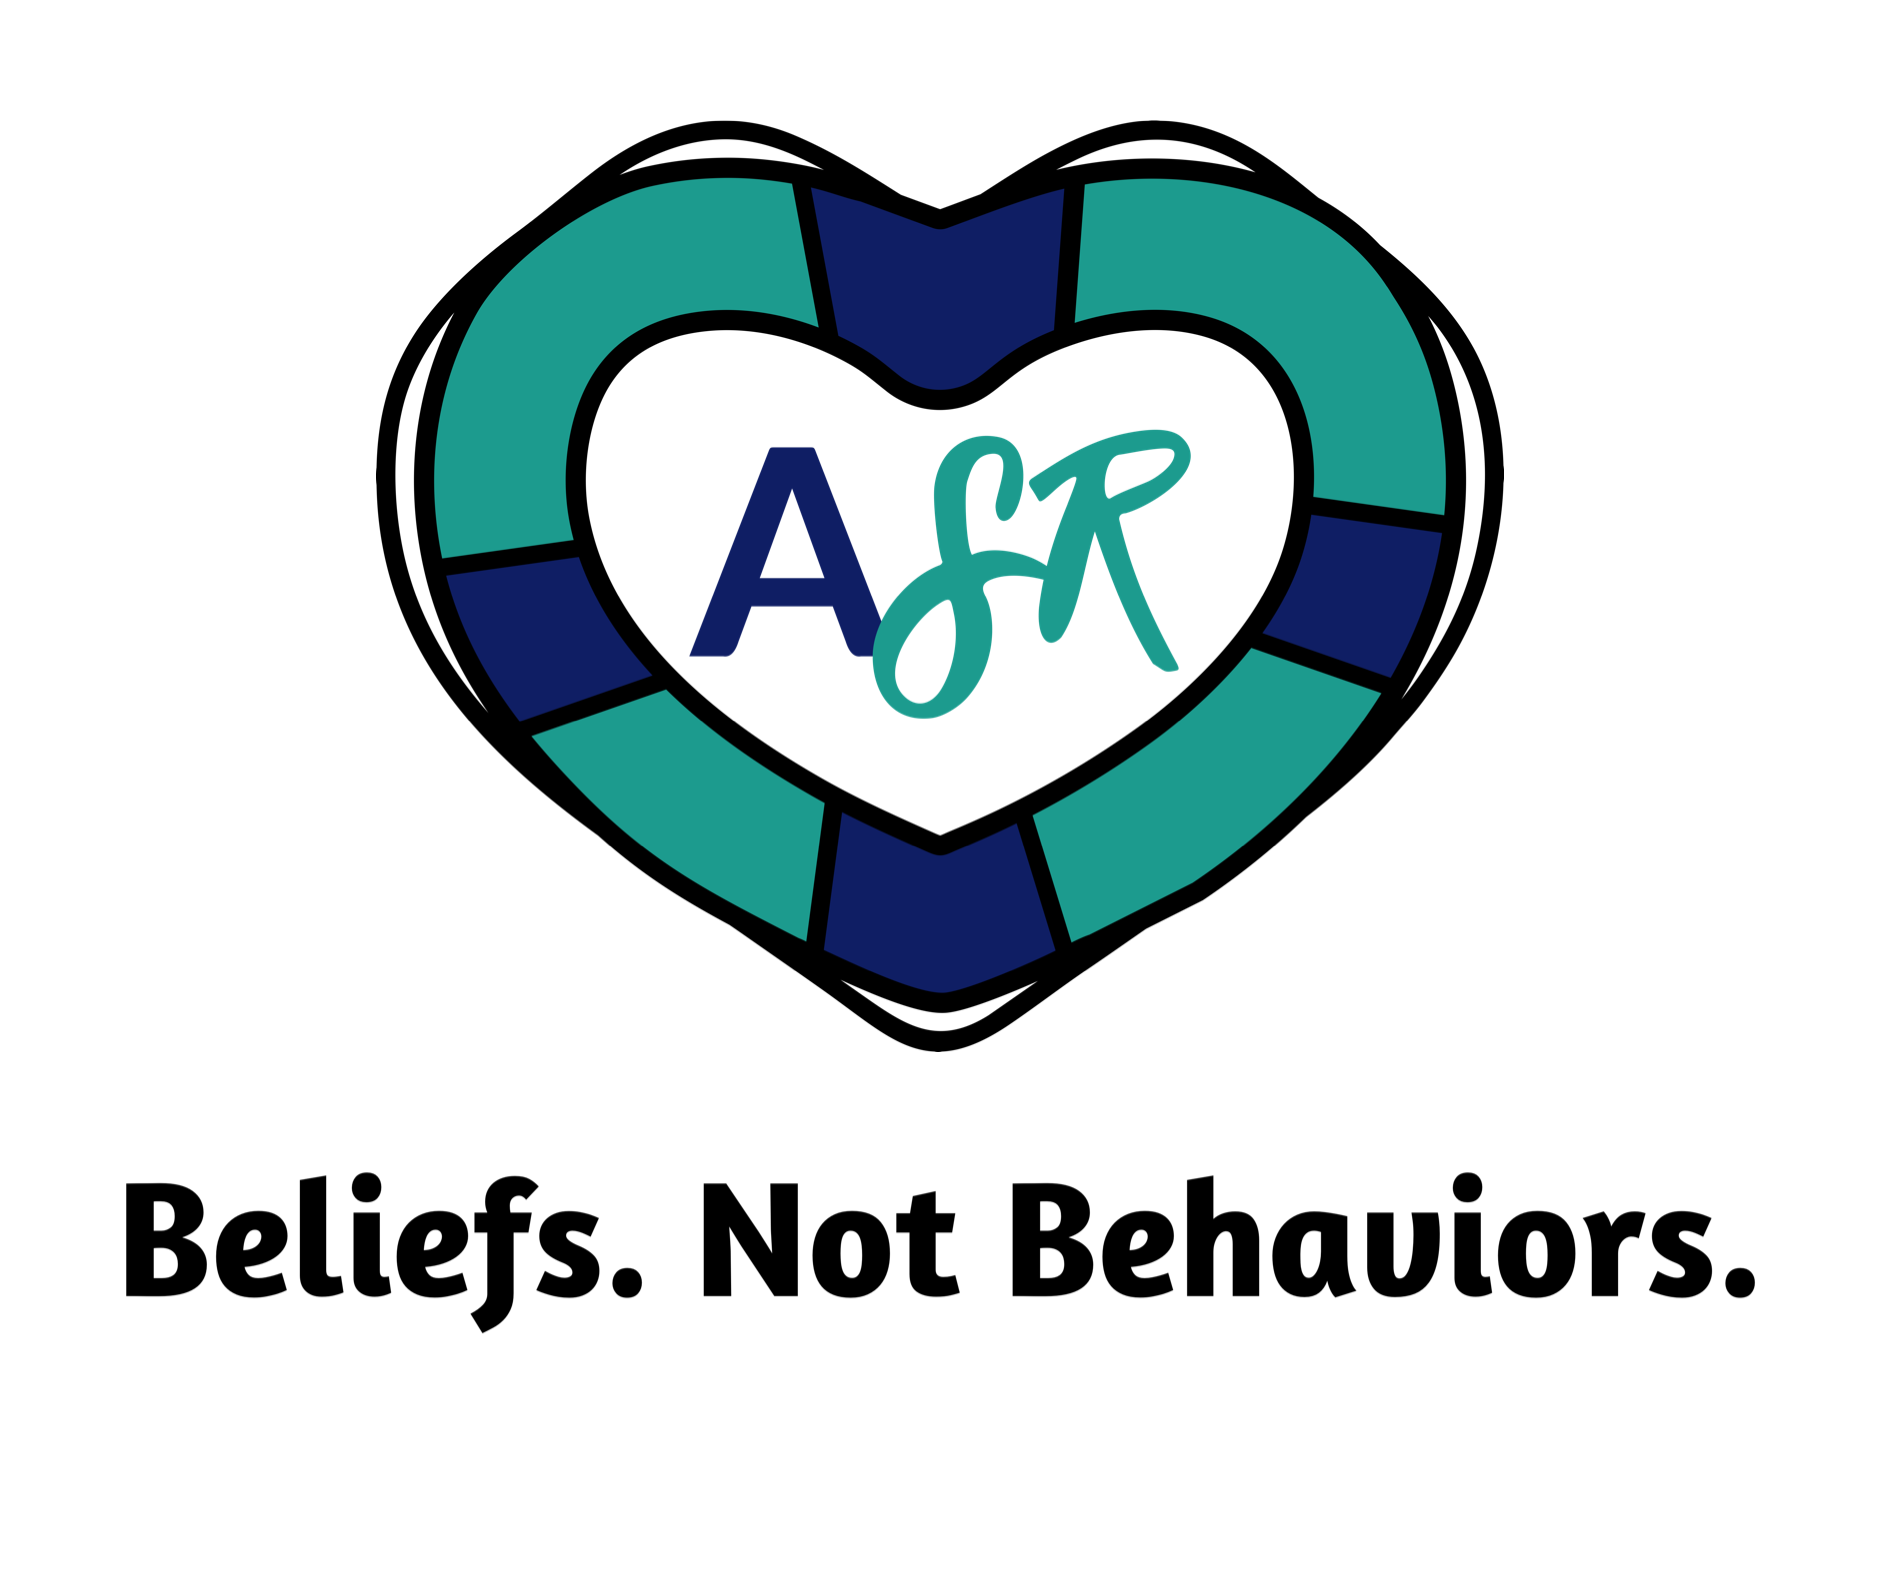 Beliefs. Not Behaviors.